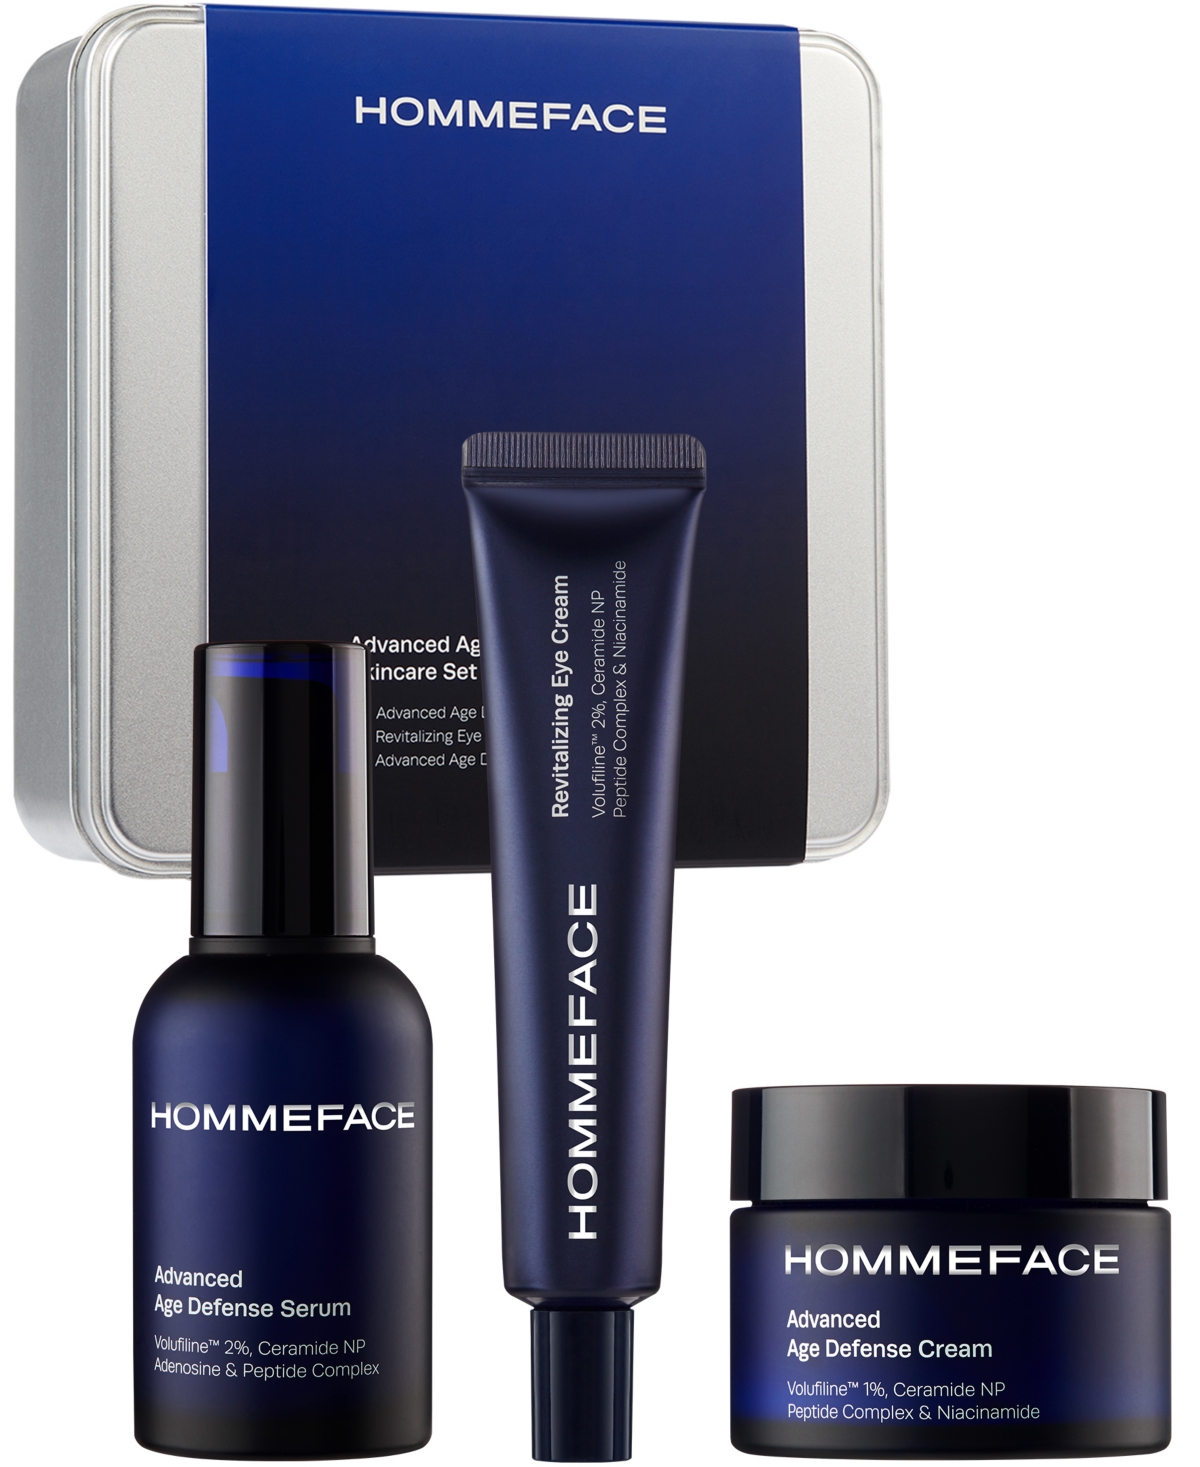 Hommeface Advanced Age Defense Skincare Set, 3 Piece